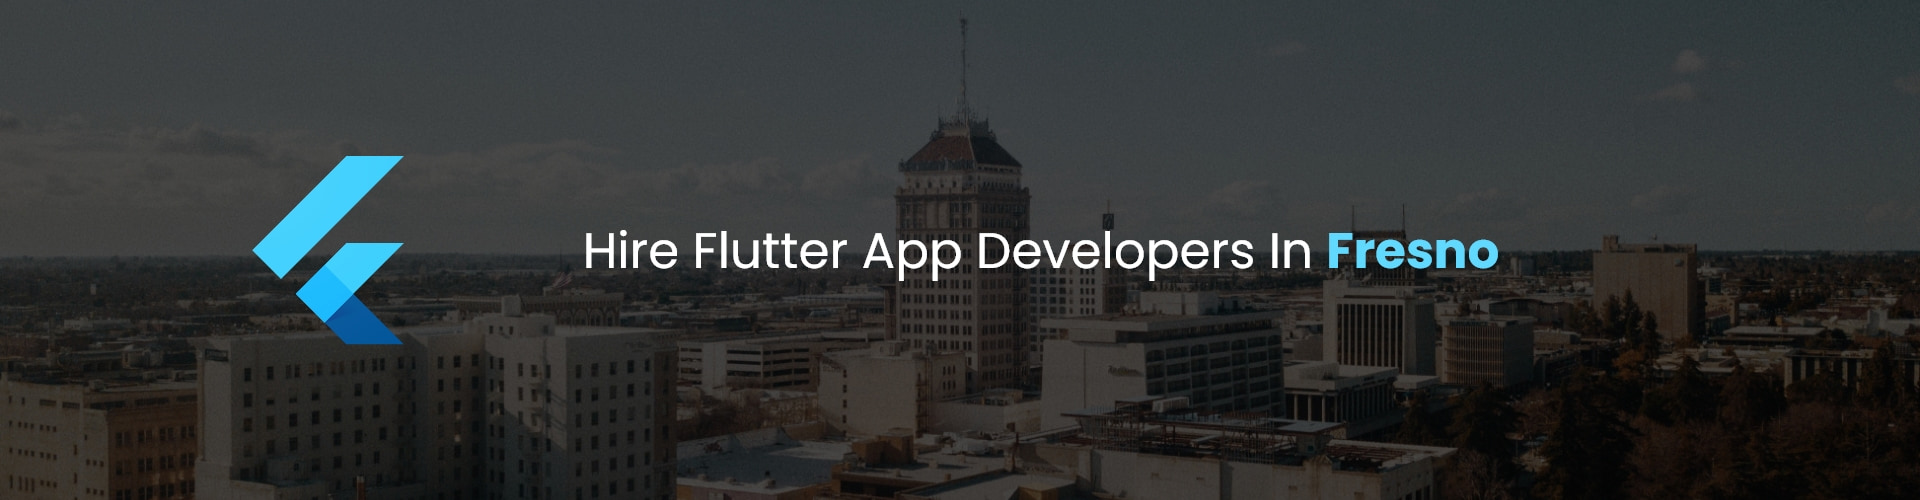 flutter app developers in fresno